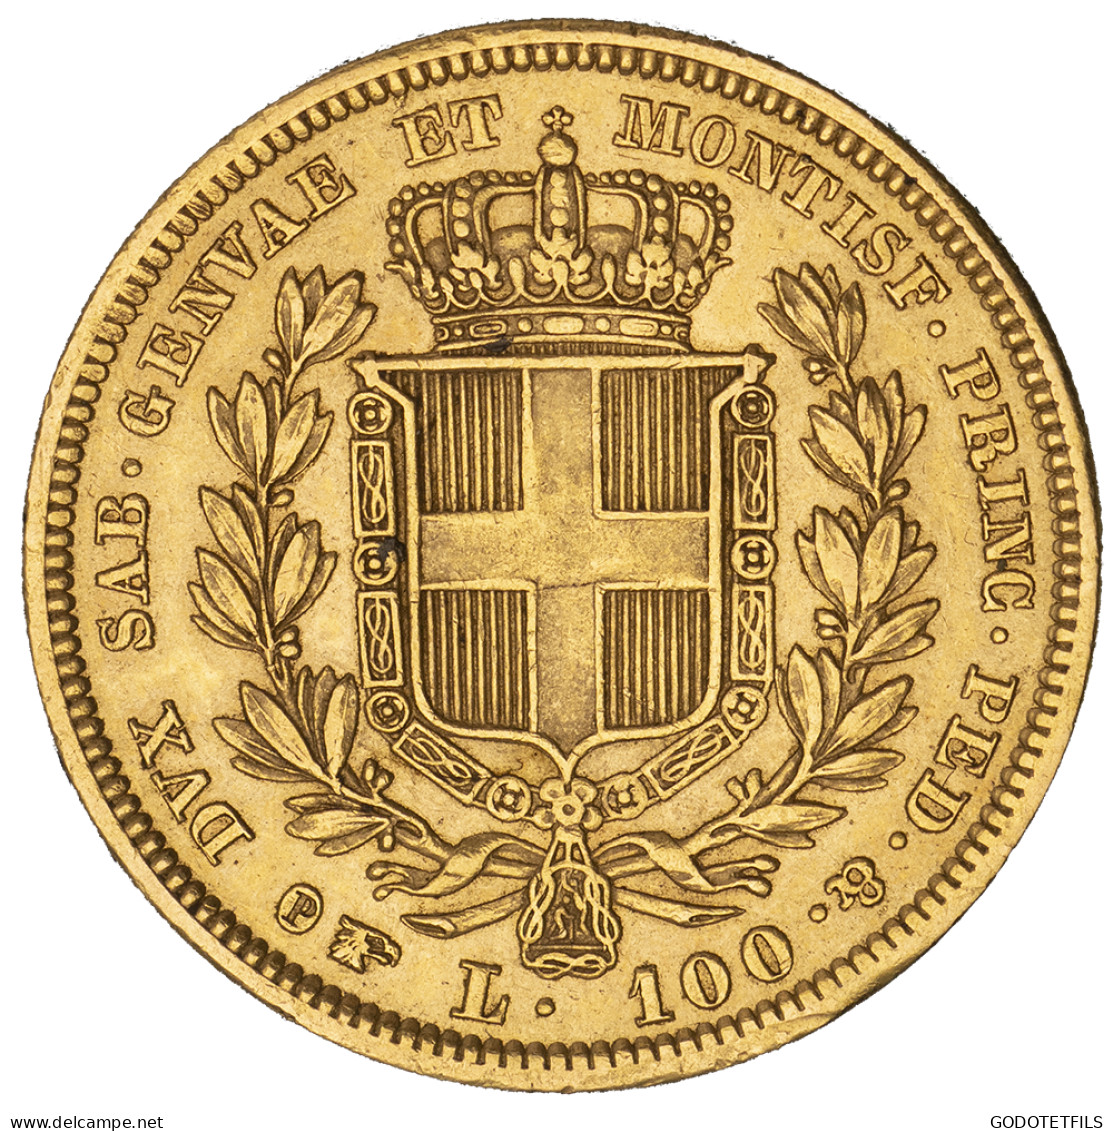 Royaume De Sardaigne-100 Lire Charles-Albert 1834 Turin - Piemonte-Sardegna, Savoia Italiana